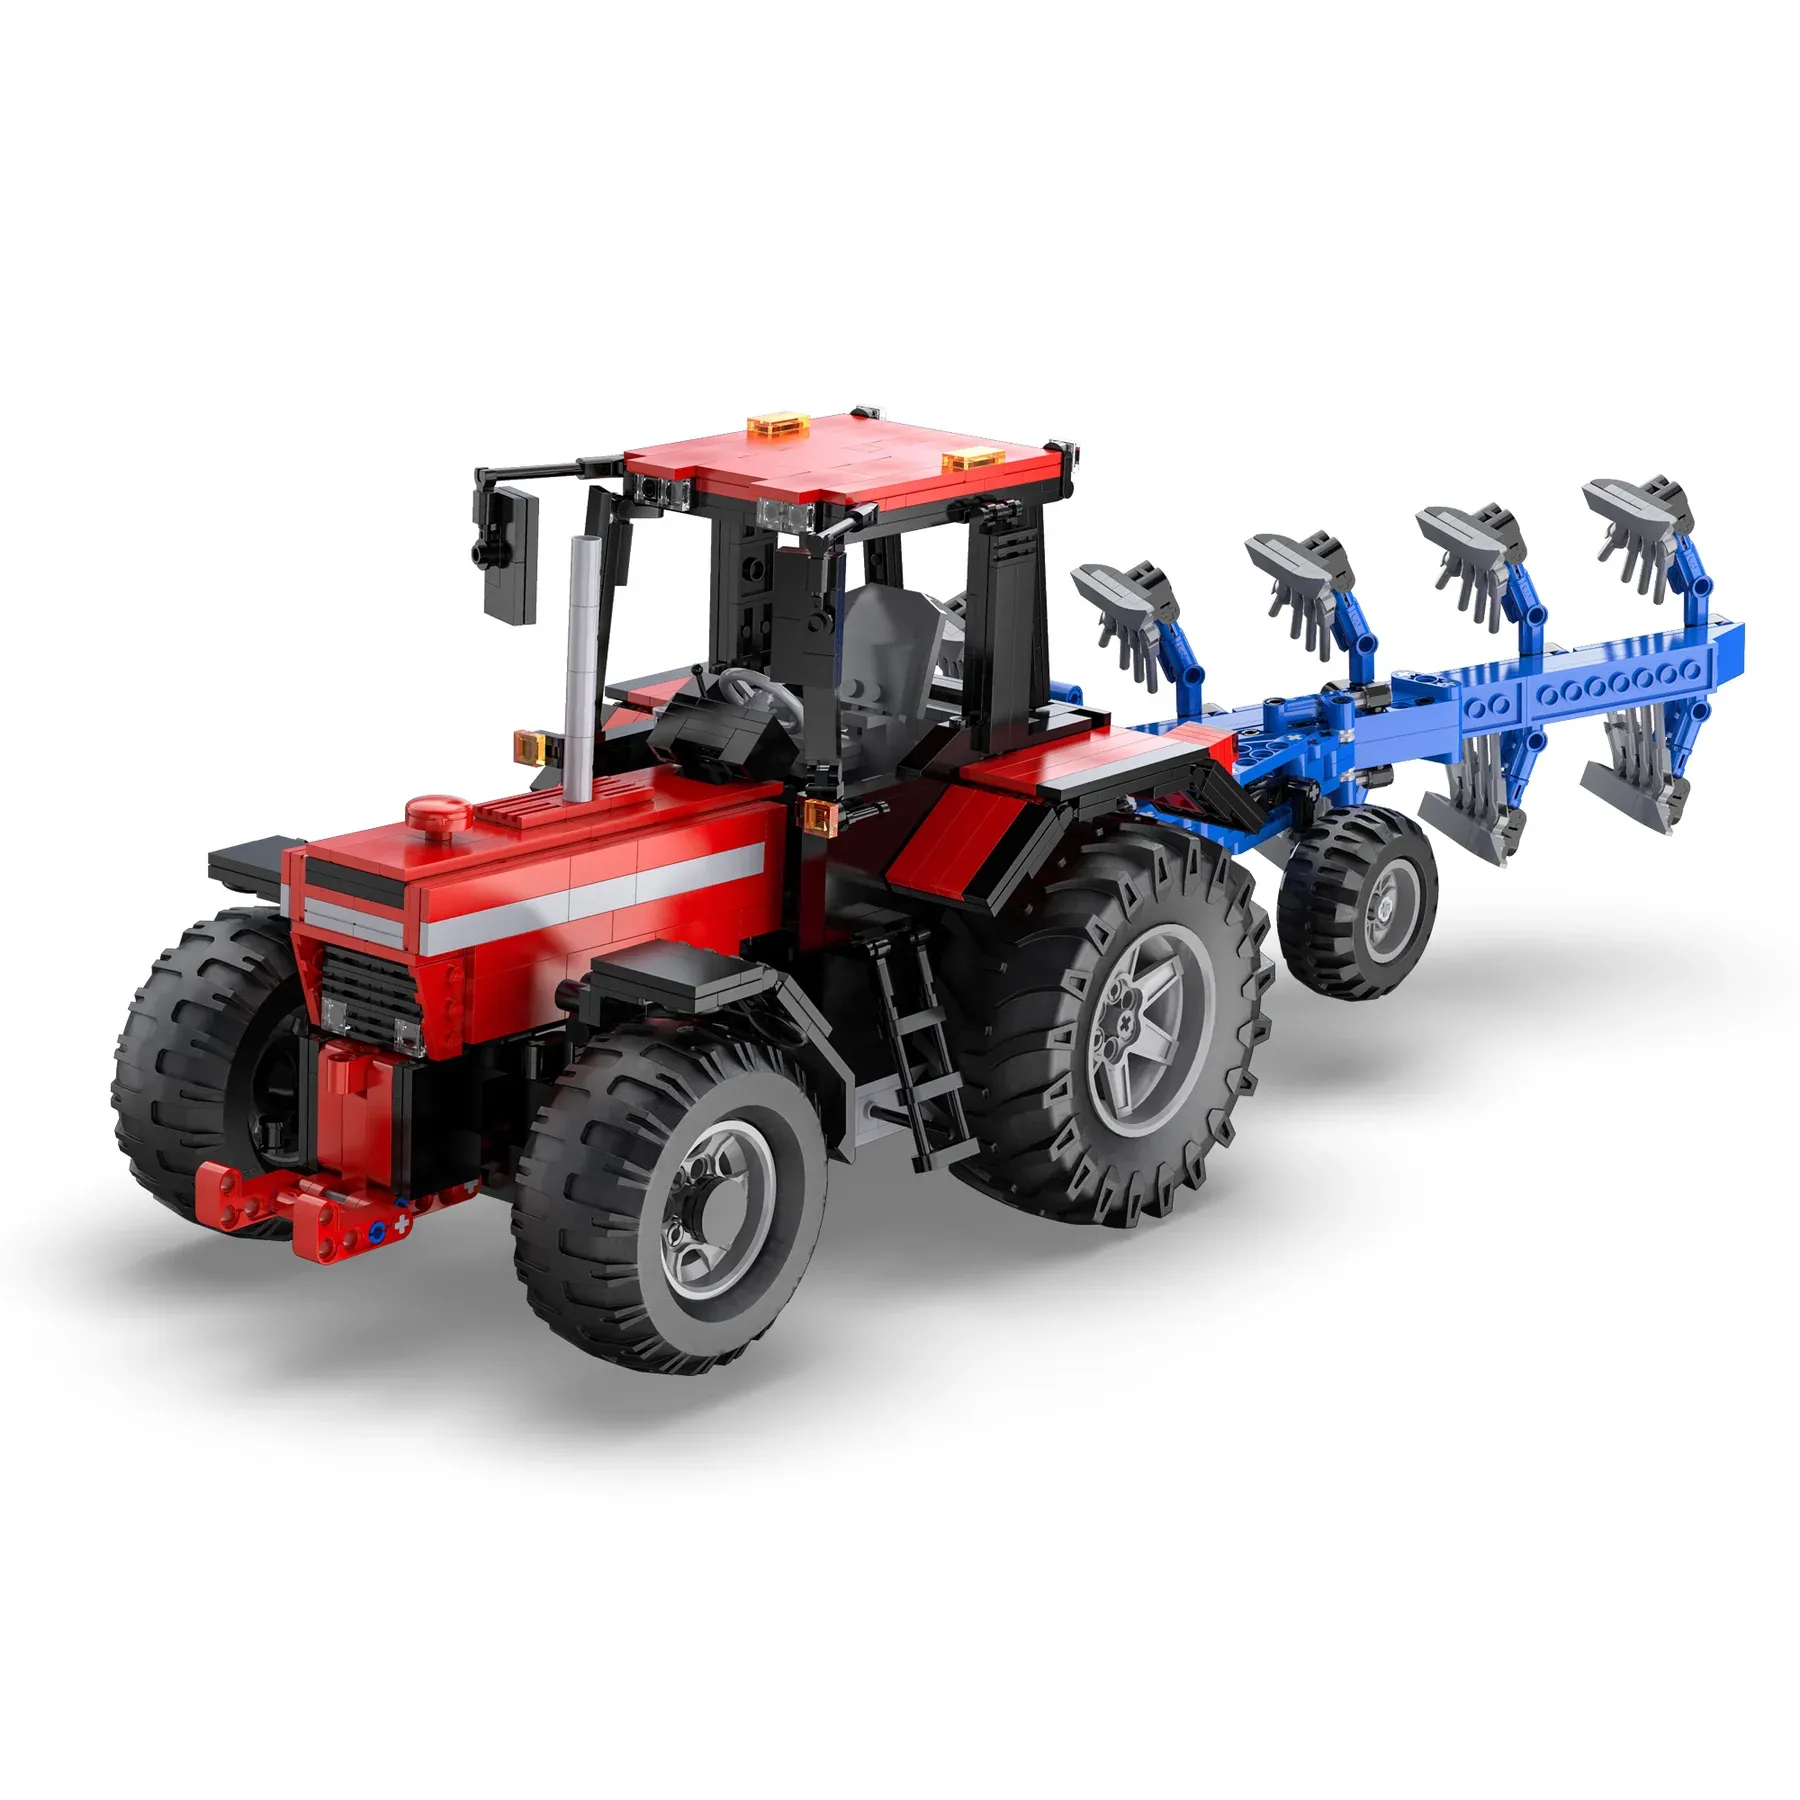 Farm Tractor Gallery